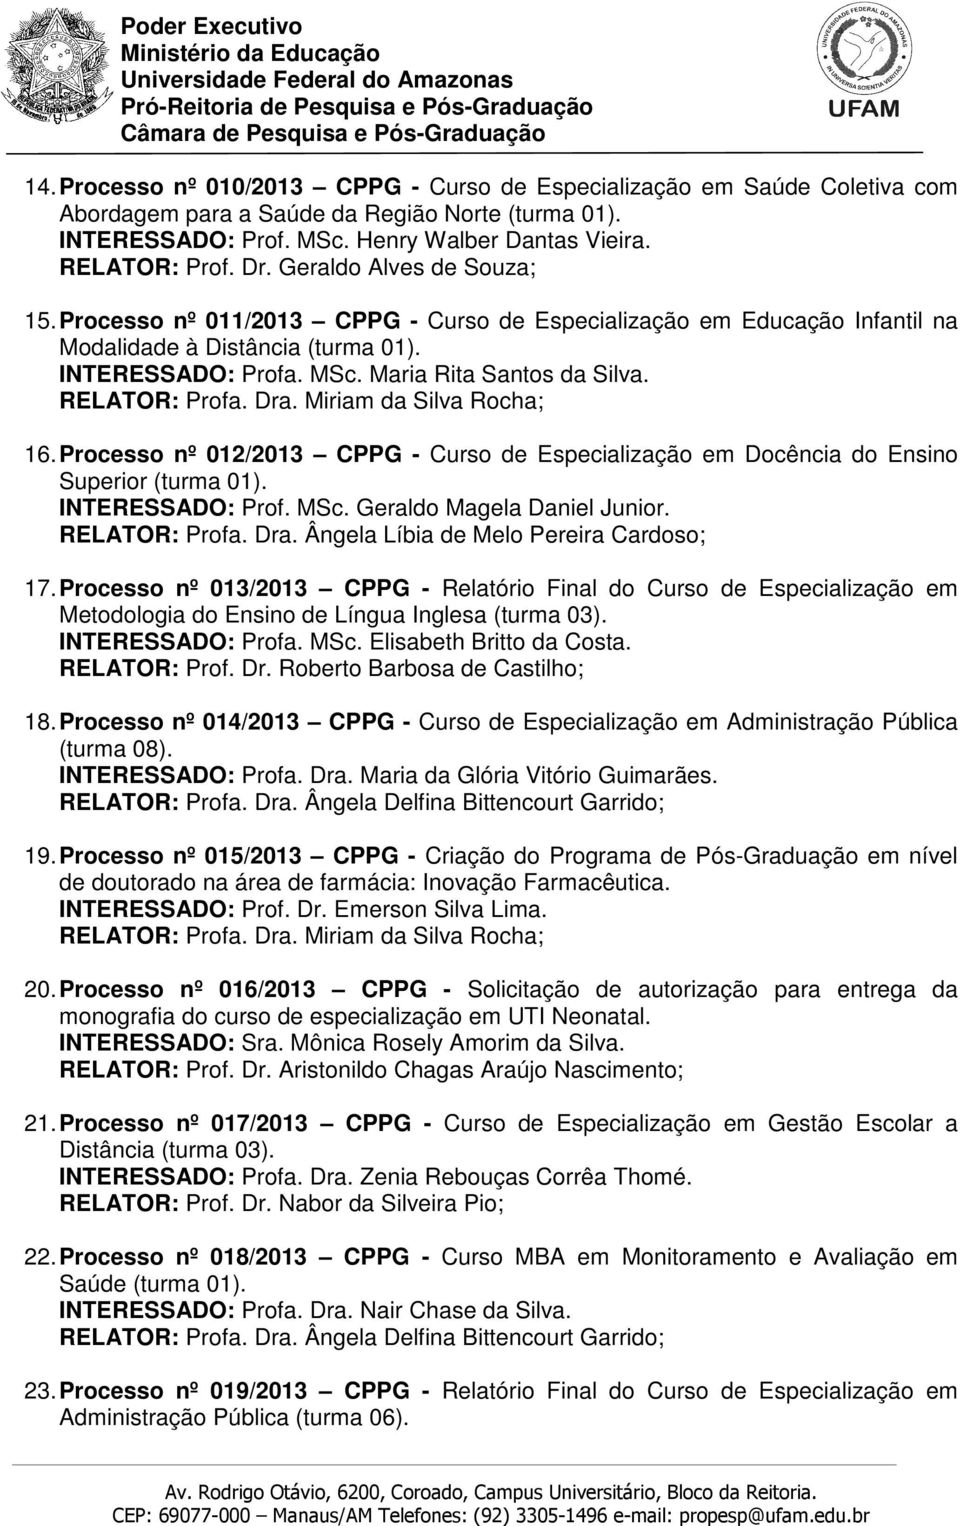 Processo nº 012/2013 CPPG - Curso de Especialização em Docência do Ensino Superior (turma 01). INTERESSADO: Prof. MSc. Geraldo Magela Daniel Junior. 17.